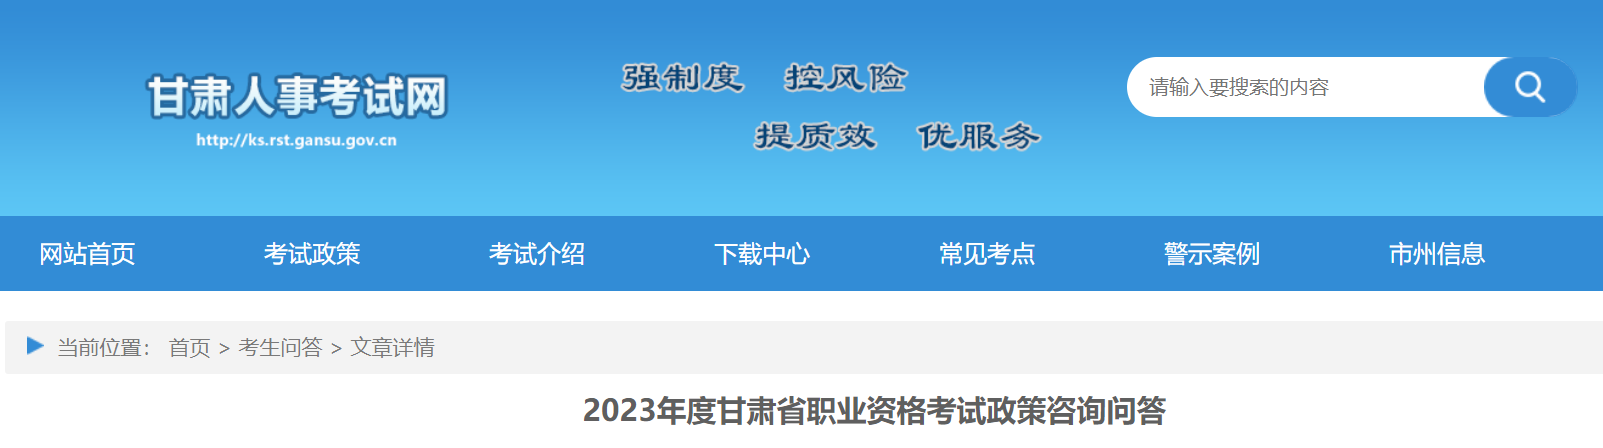 2023年度甘肃省职业资格考试政策咨询问答